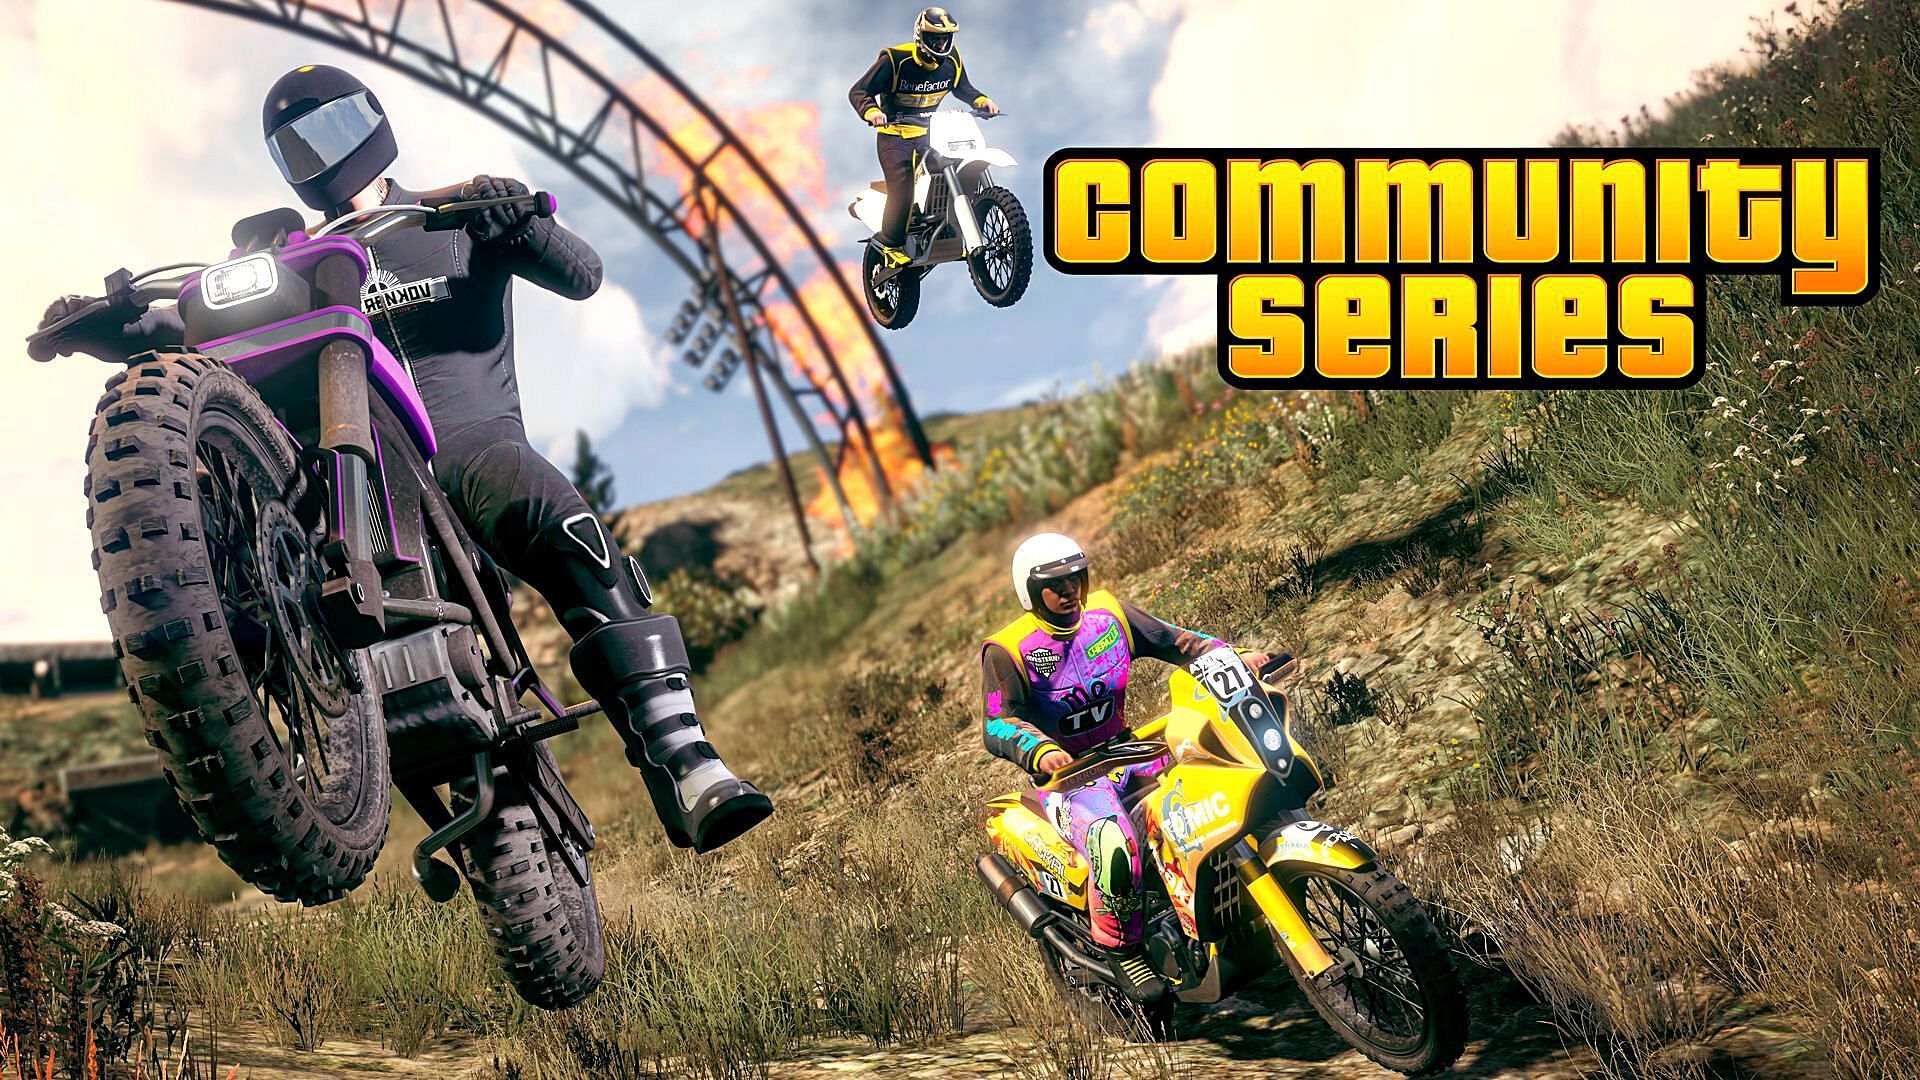 Rockstar has just released new GTA Online Community Series update (Image via Rockstar Games)